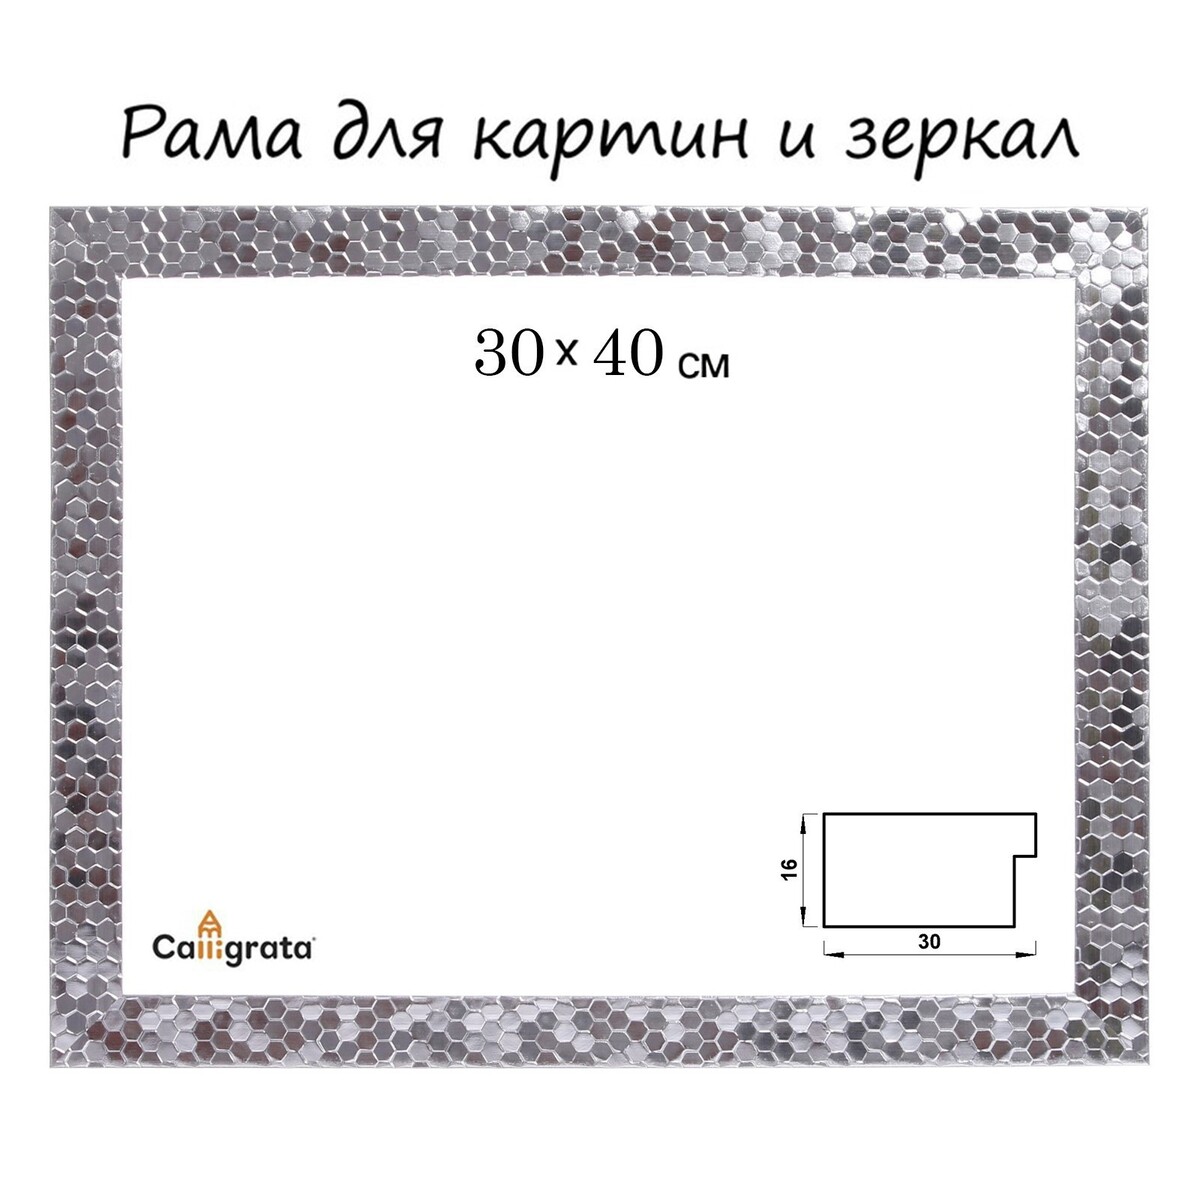 Рама для картин (зеркал) 30 х 40 х 2.7 см, пластиковая, calligrata 651628, серебро